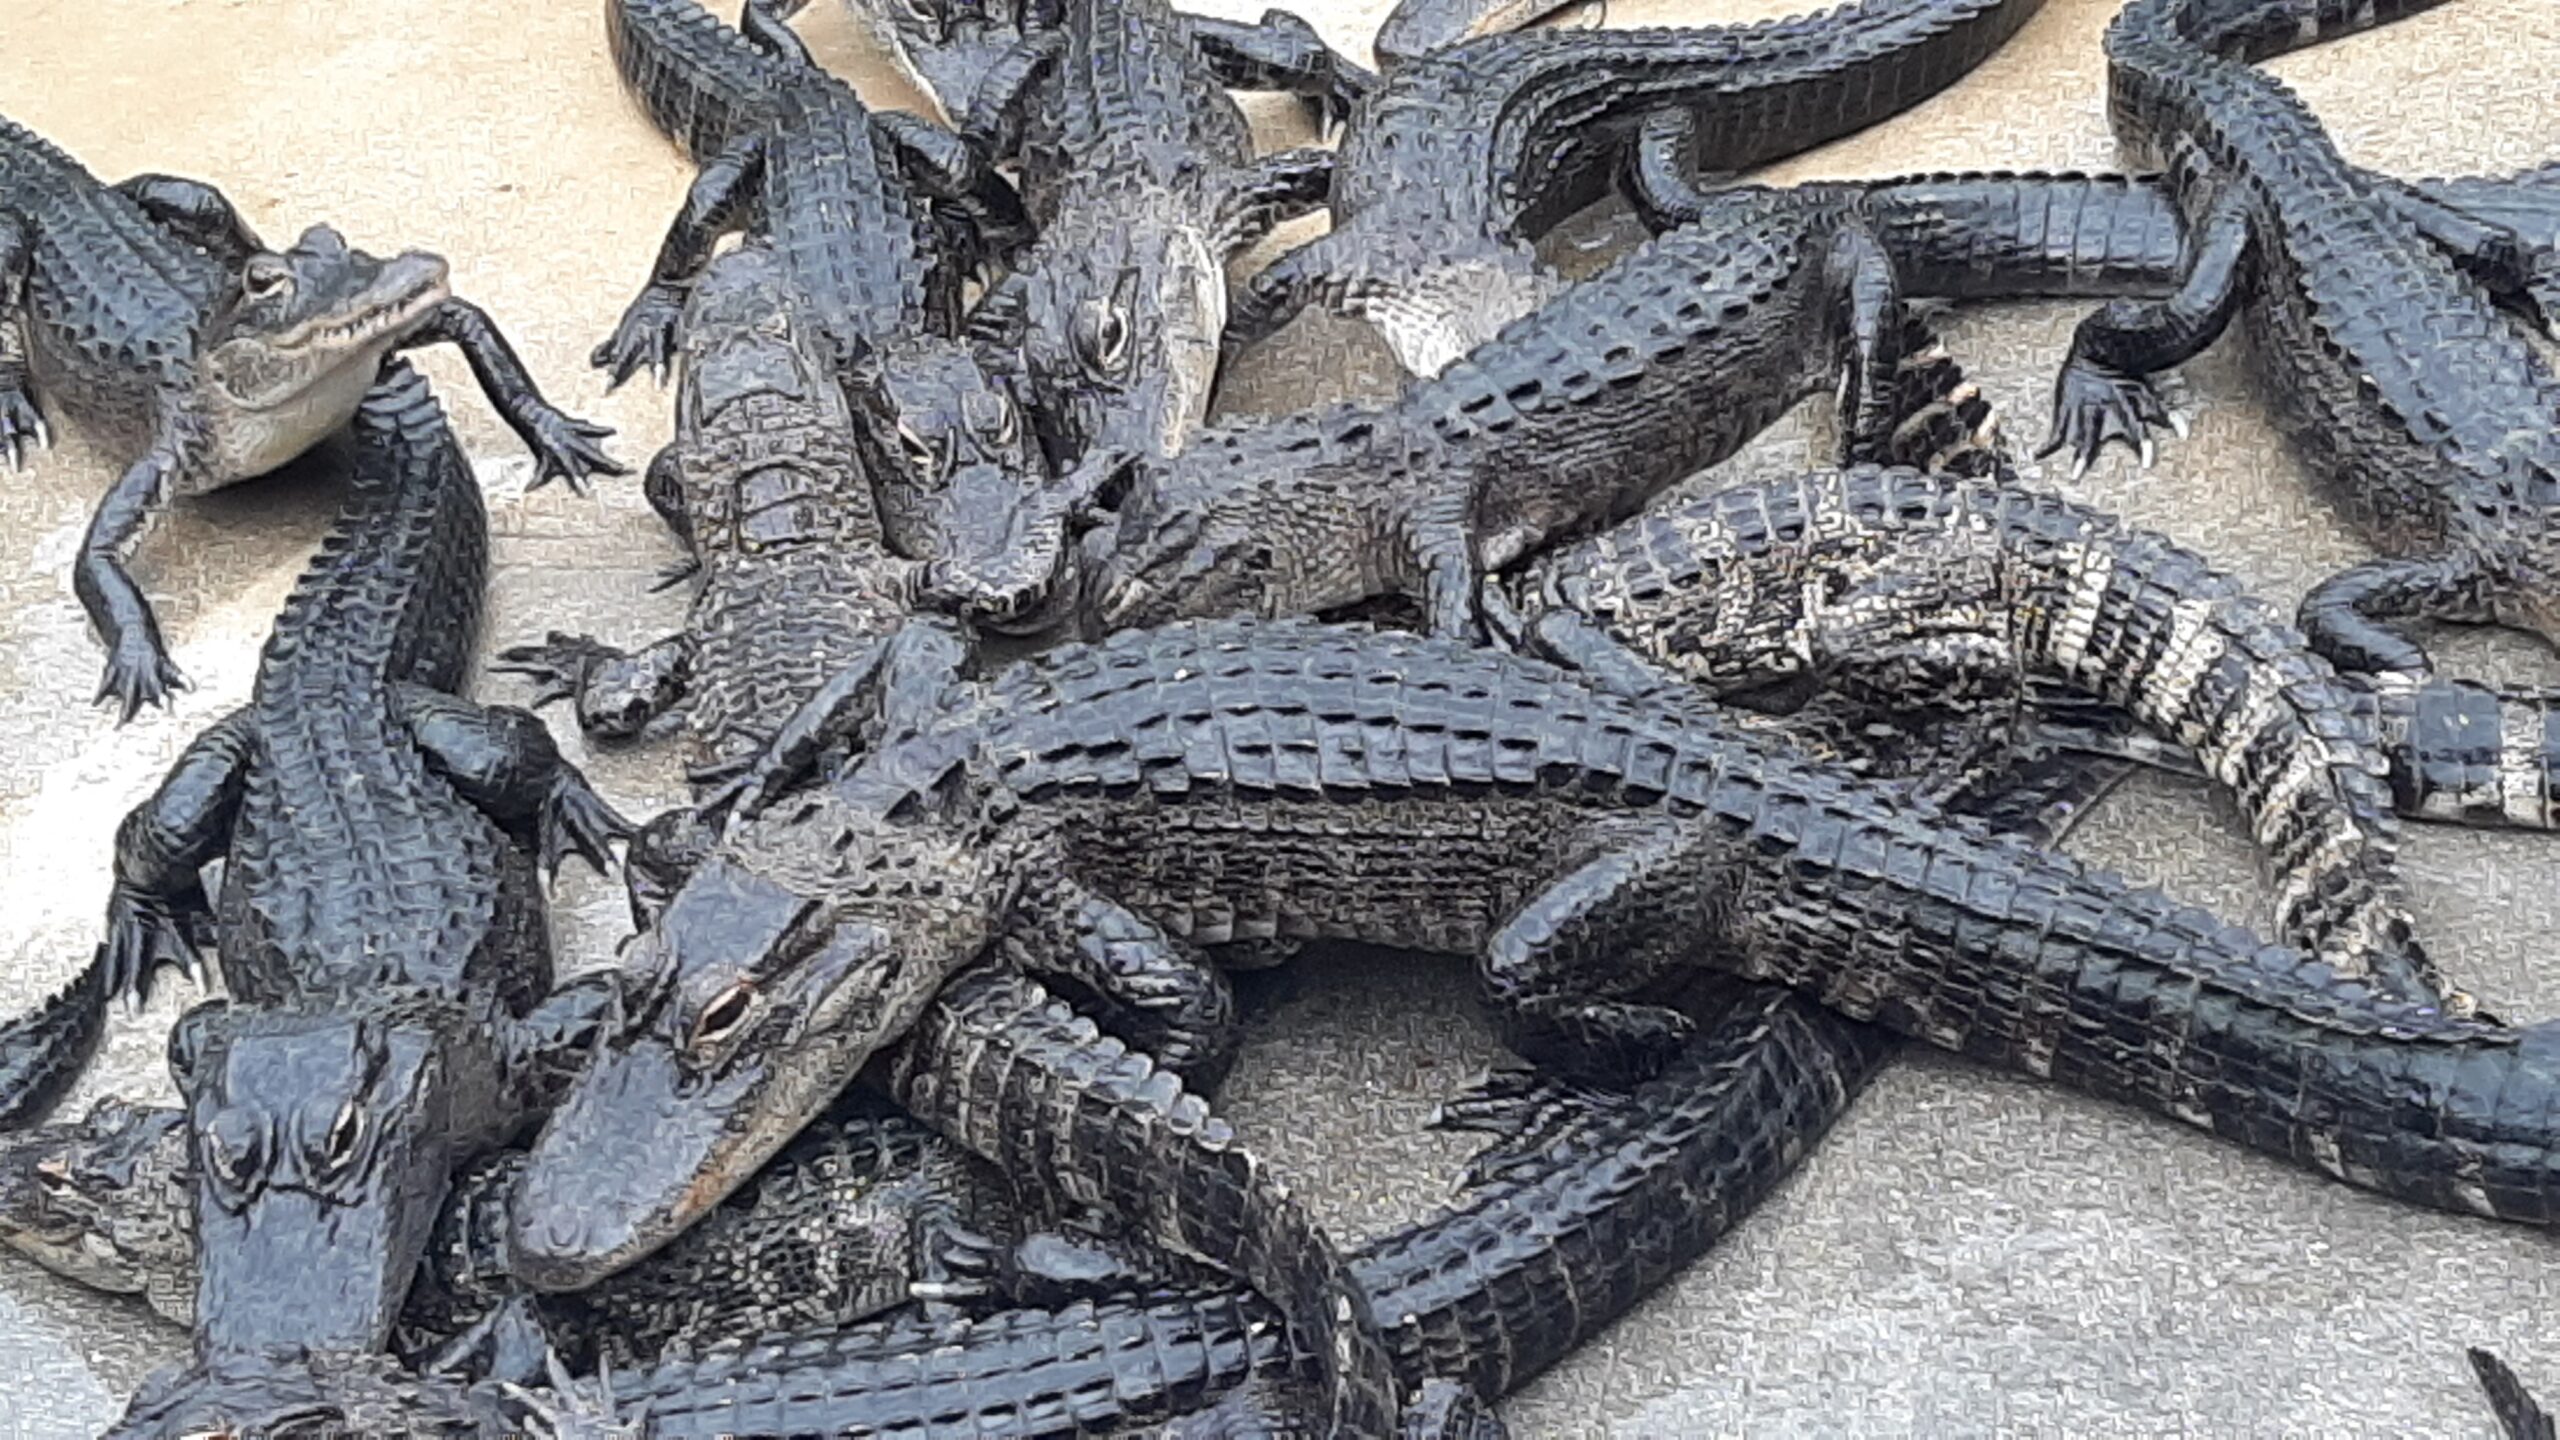 Everglades Alligator Farm Reviews